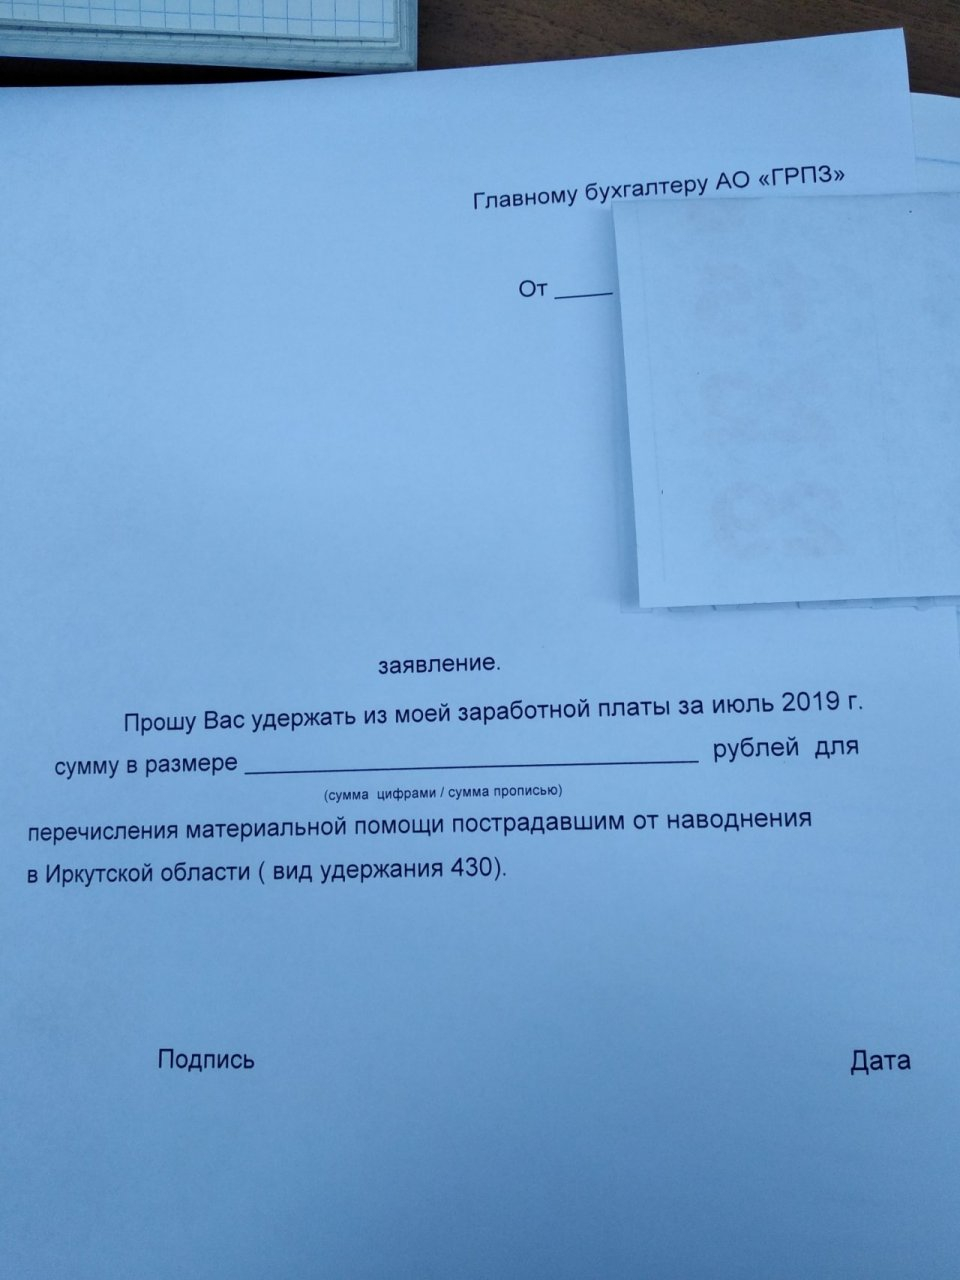 Соцсети: работникам приборного завода предлагают написать заявления на удержание денег из зарплаты